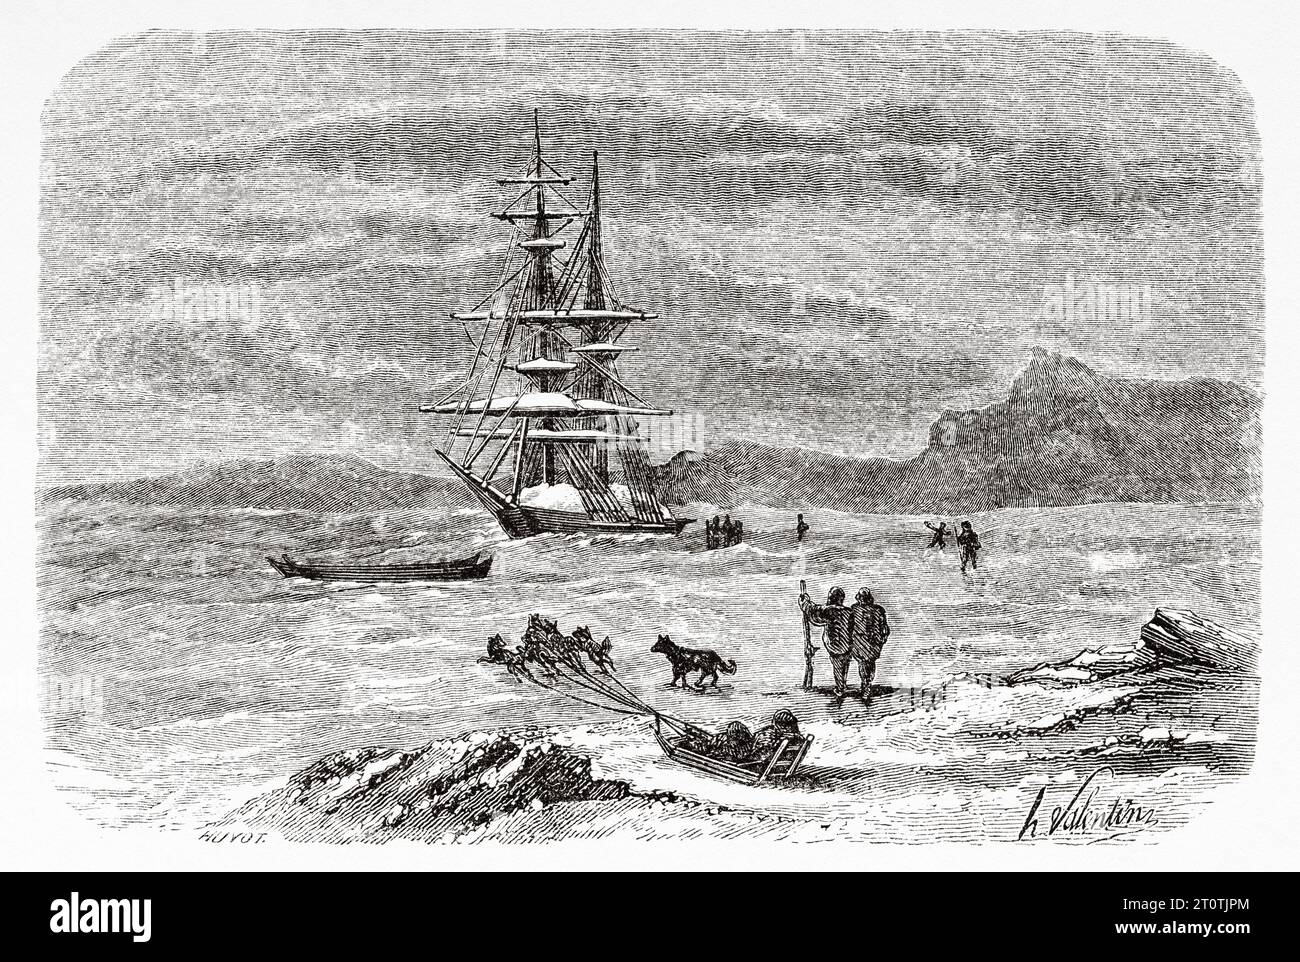 La goélette à vapeur Fox sous la direction de Leopold McClintock (1786-1847) et des hommes de son expédition dans l'Arctique, dans le détroit de Bellot. Histoire de l'expédition perdue de Franklin dans l'Arctique (1786-1847) gravure ancienne du 19e siècle du Tour du monde 1860 Banque D'Images